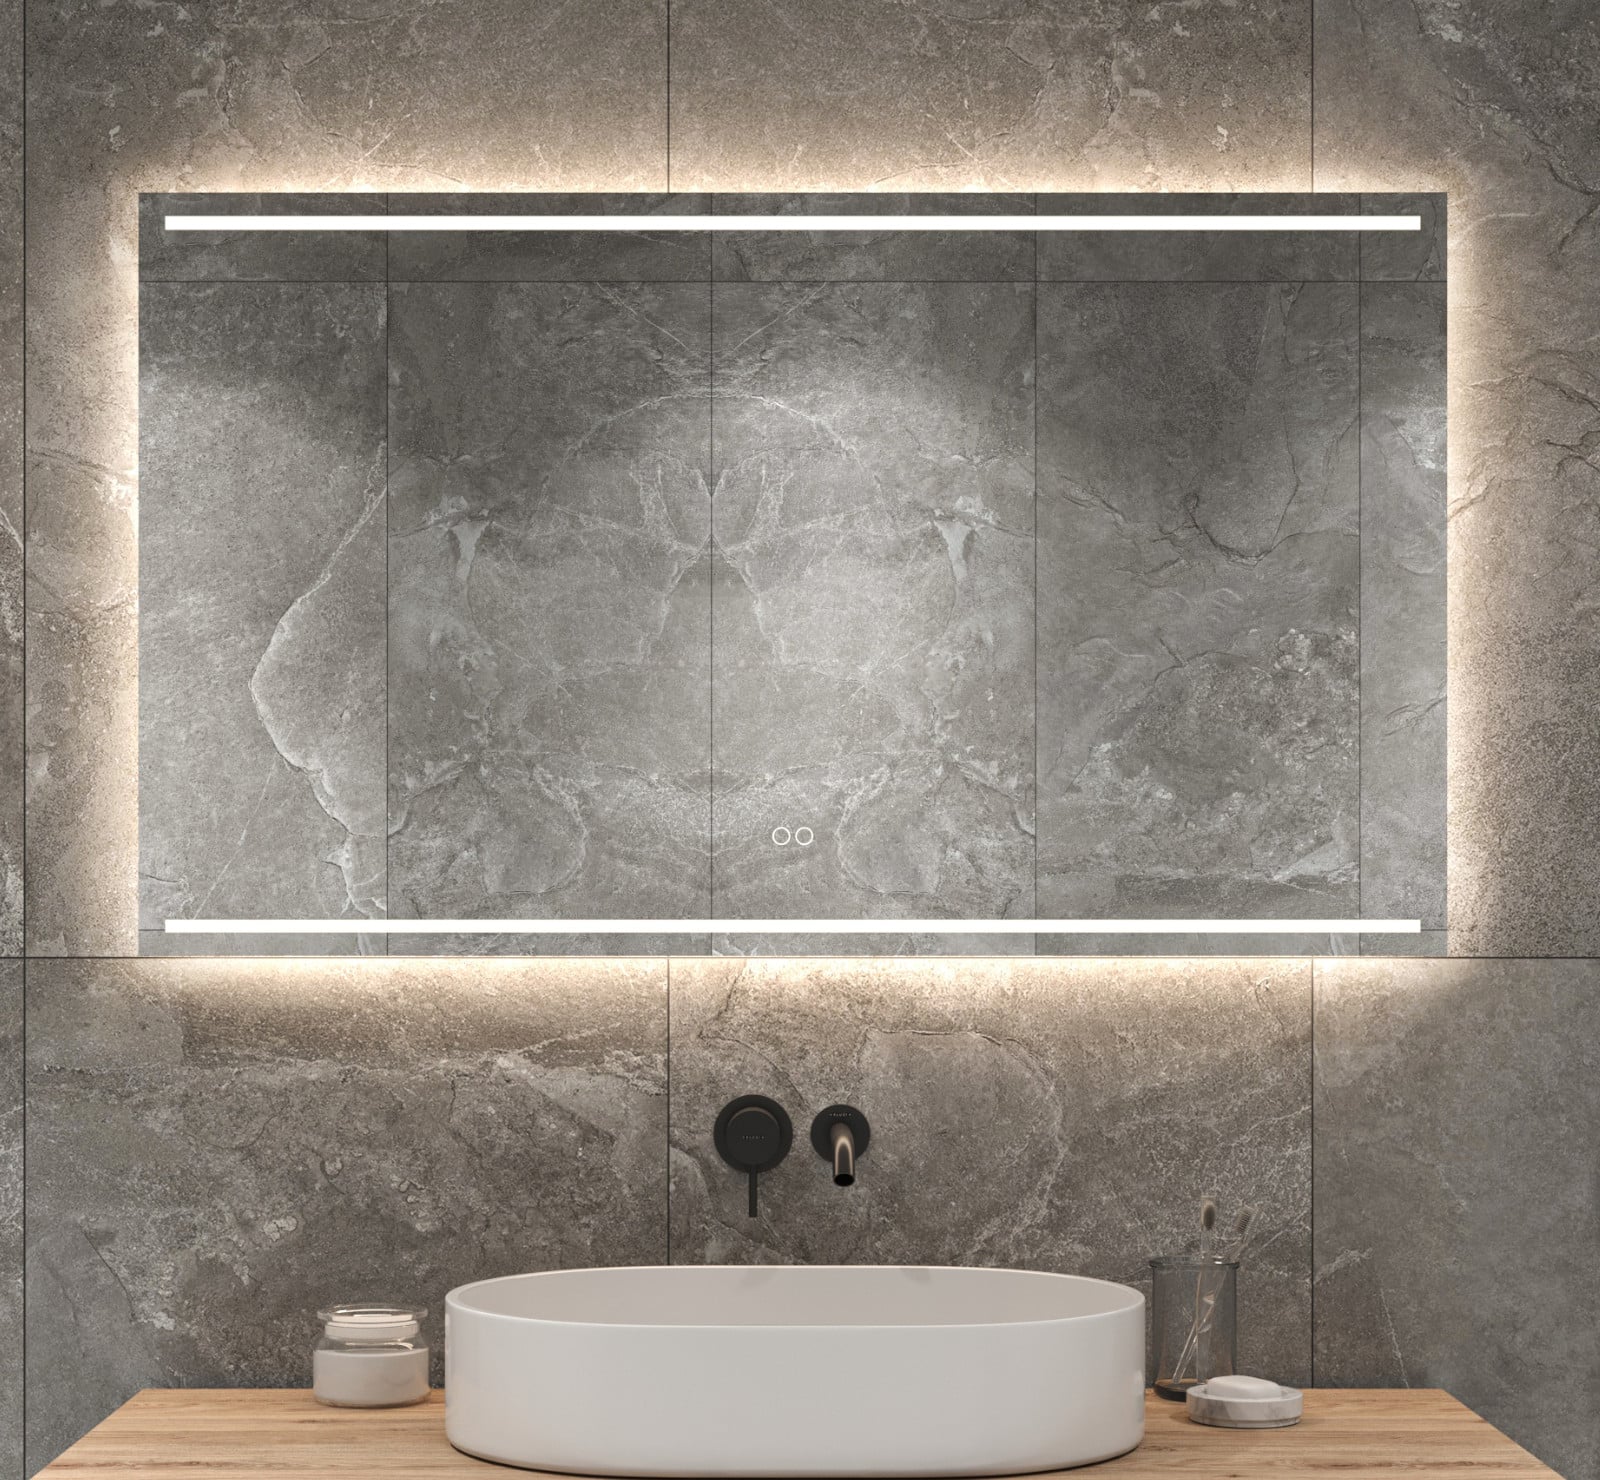 Meesterschap Onverbiddelijk draad Badkamerspiegel met LED verlichting, verwarming, instelbare lichtkleur en  dimfunctie 120x70 cm - Designspiegels